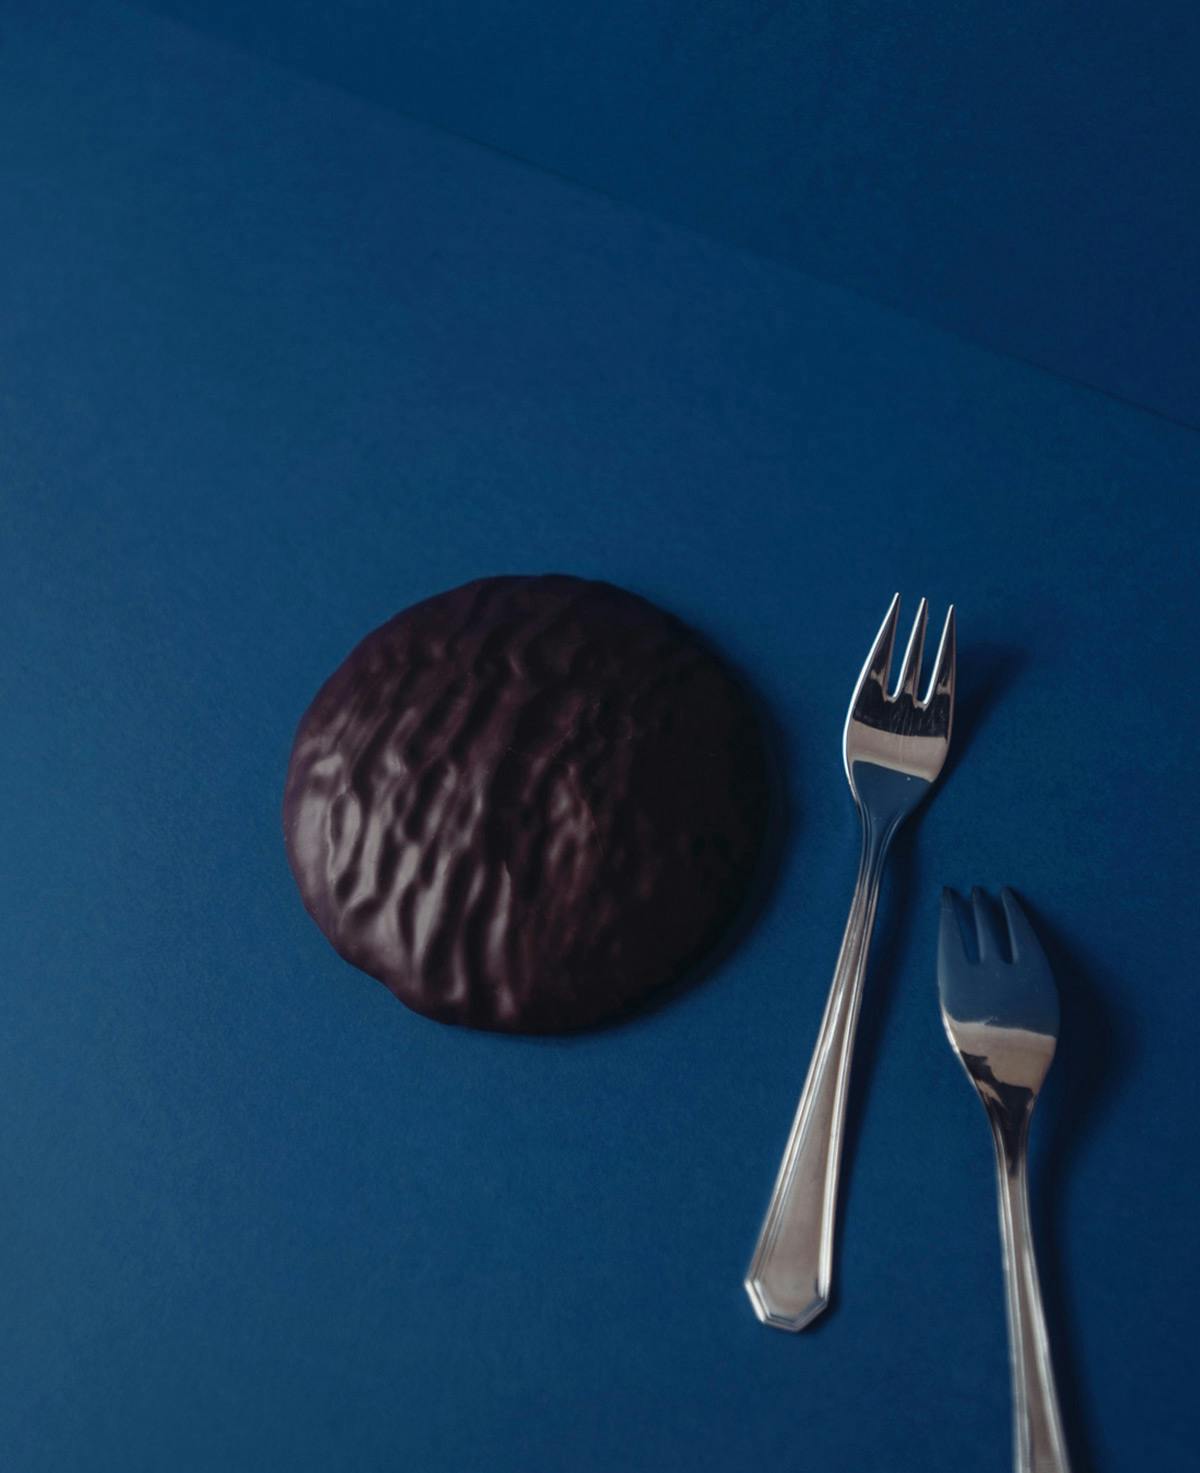 Hochwertiger Oblaten Lebkuchen mit dicker Schicht Schokoladenkuvertüre Dunkle Schokolade.